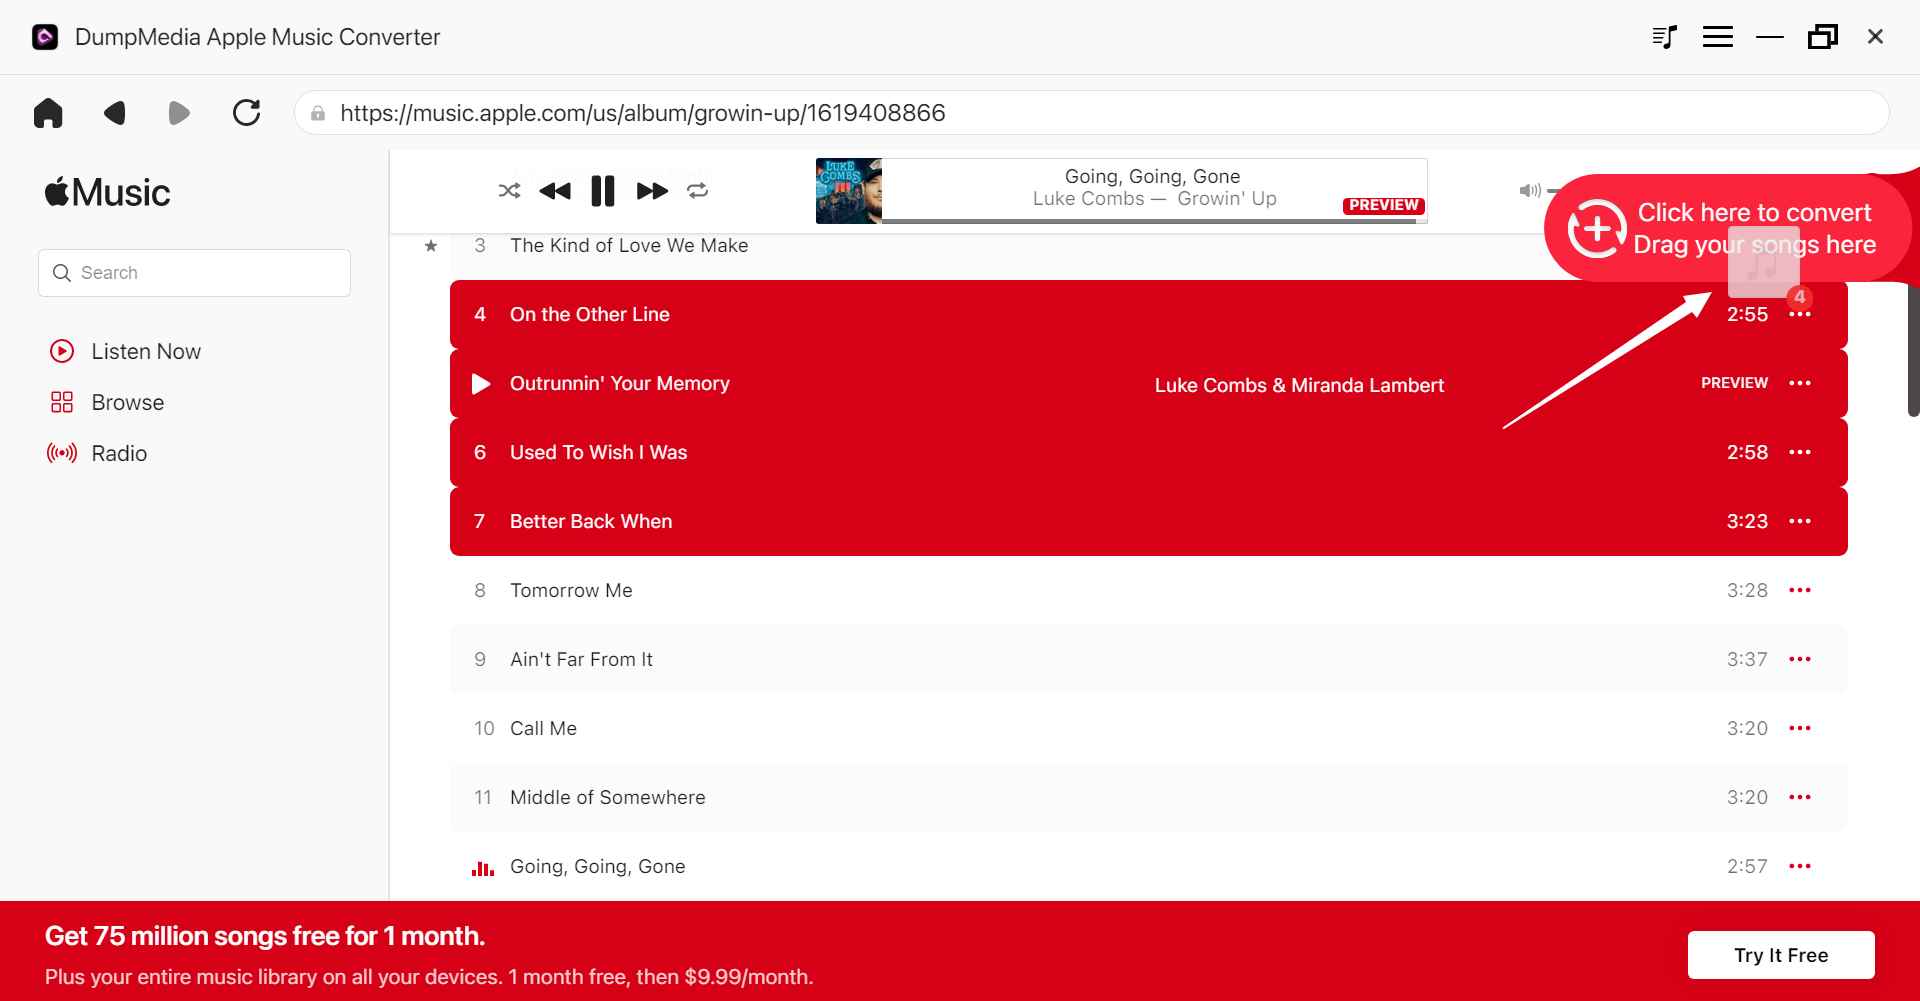 Le meilleur logiciel Apple Music Converter : DumpMedia Apple Music Converter - Ajouter des fichiers